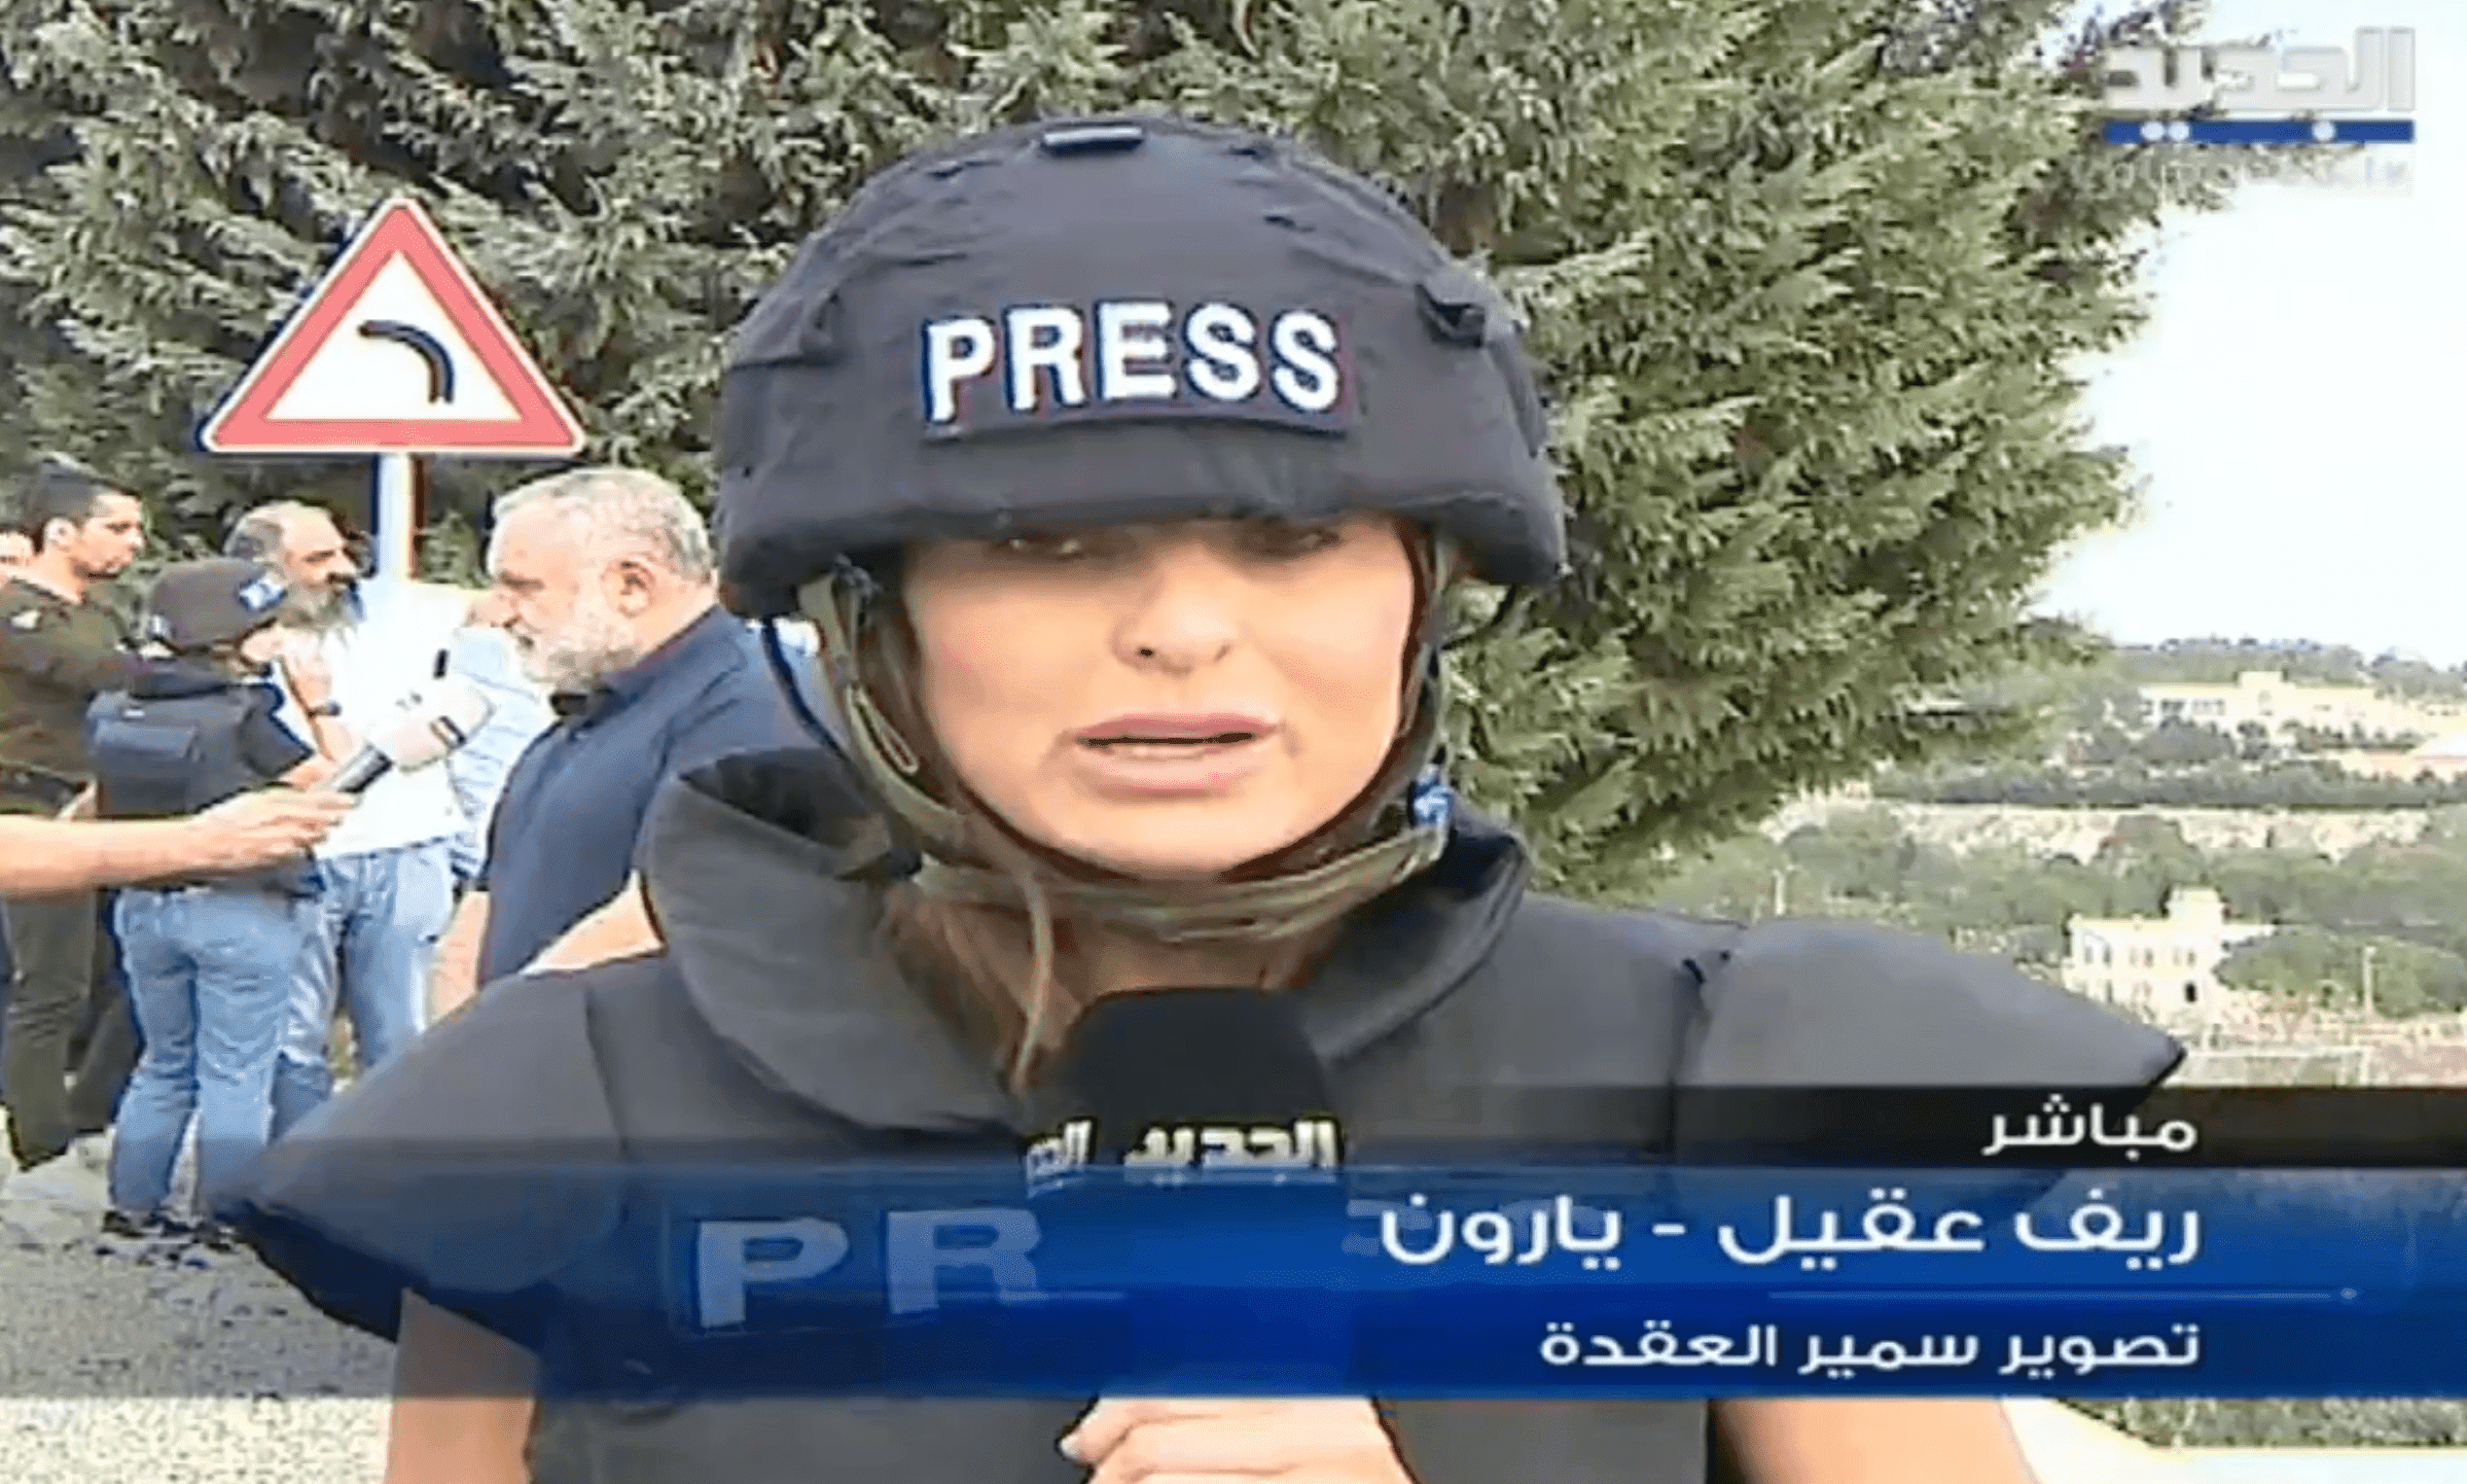 Israele spara sui giornalisti che stavano  realizzando reportage nel sud del Libano